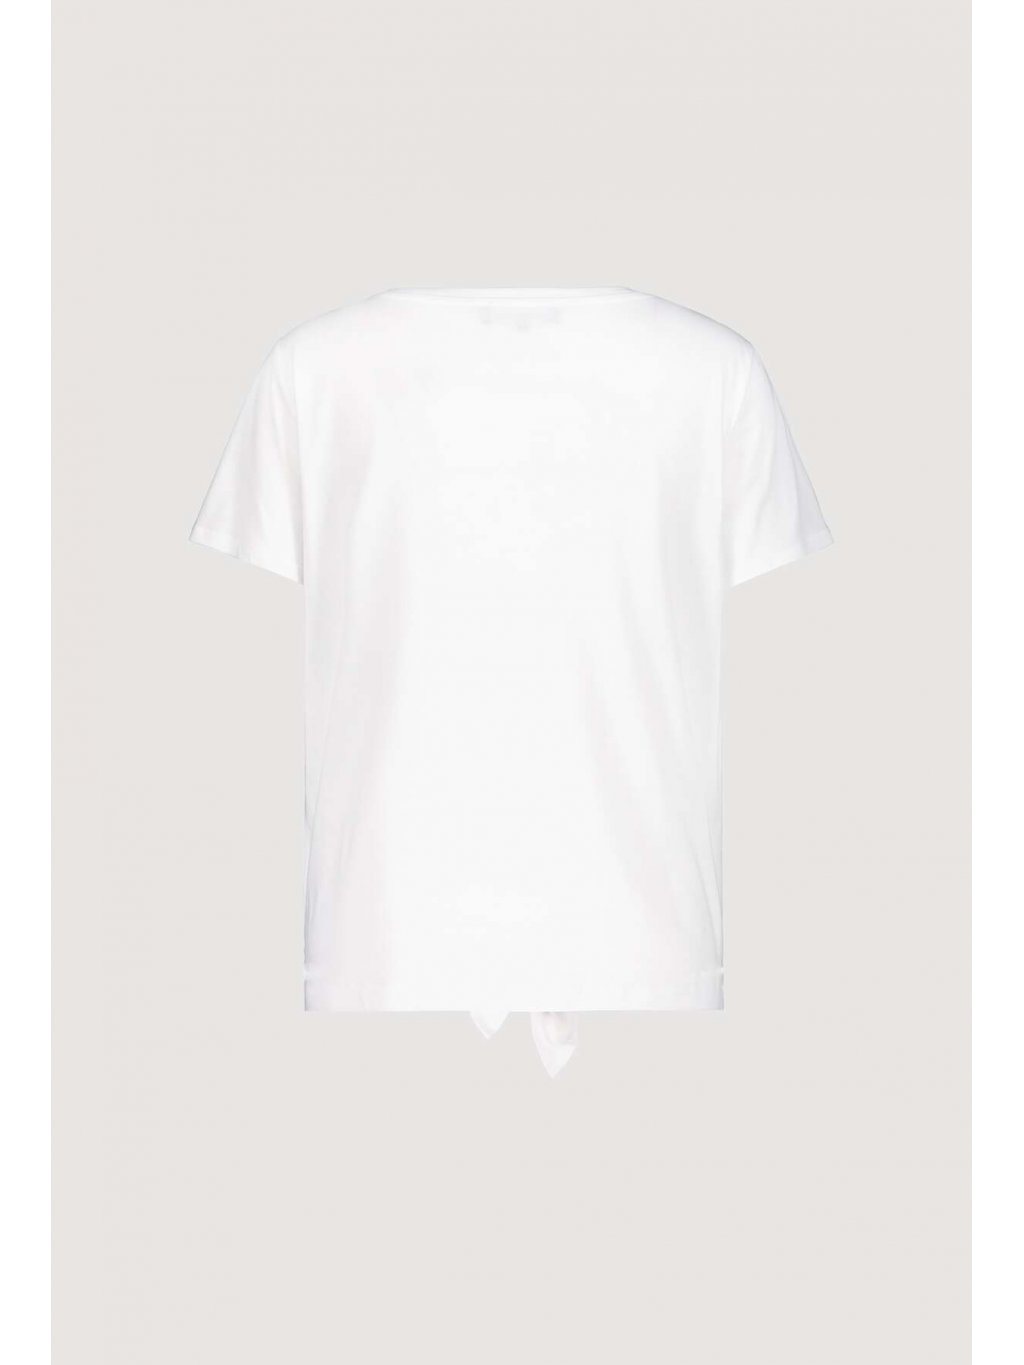 Tričko Monari 7131 bílé s vazačkou a trendy grafikou